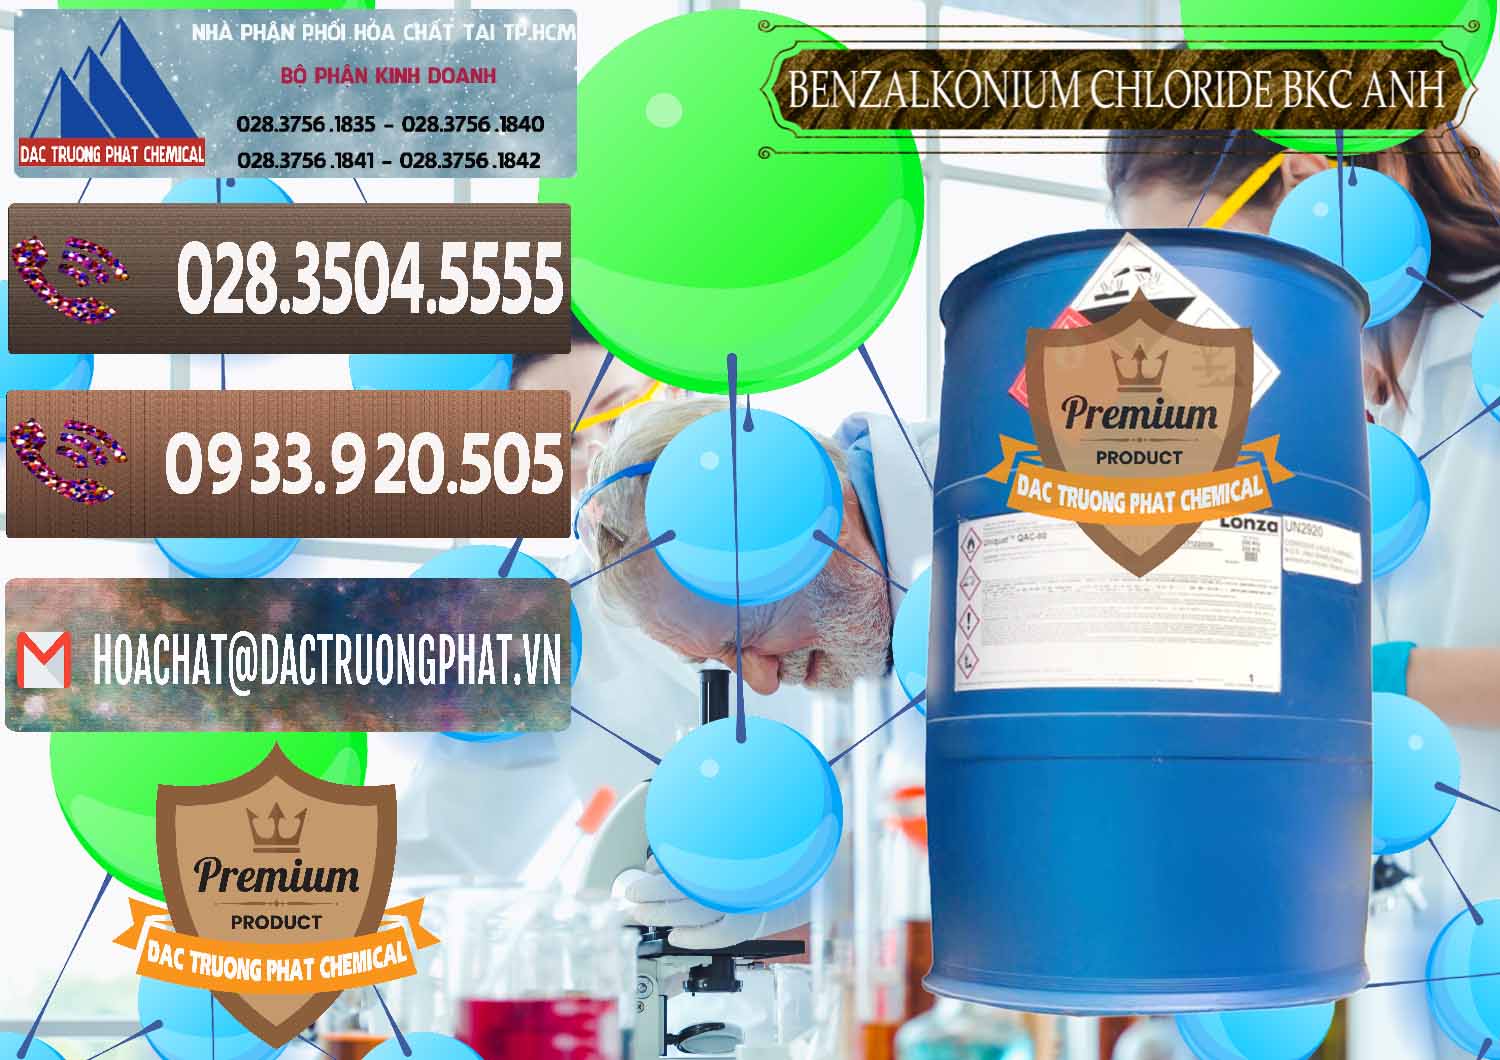 Cty chuyên bán ( phân phối ) BKC - Benzalkonium Chloride 80% Anh Quốc Uk Kingdoms - 0457 - Nơi chuyên kinh doanh - phân phối hóa chất tại TP.HCM - hoachatviet.net